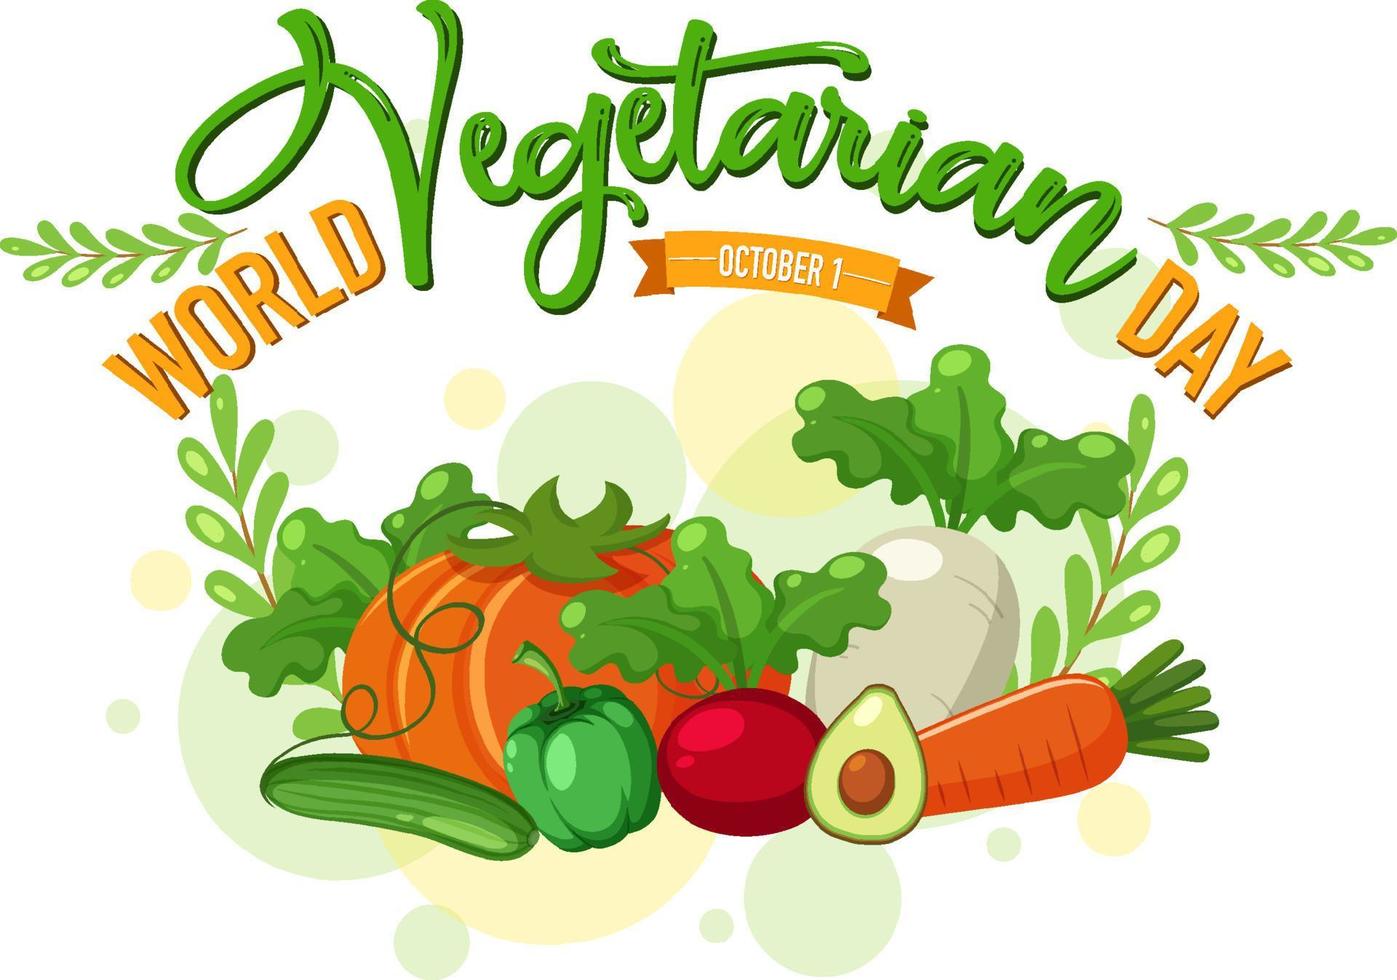 logotipo do dia vegetariano mundial com vegetais e frutas vetor